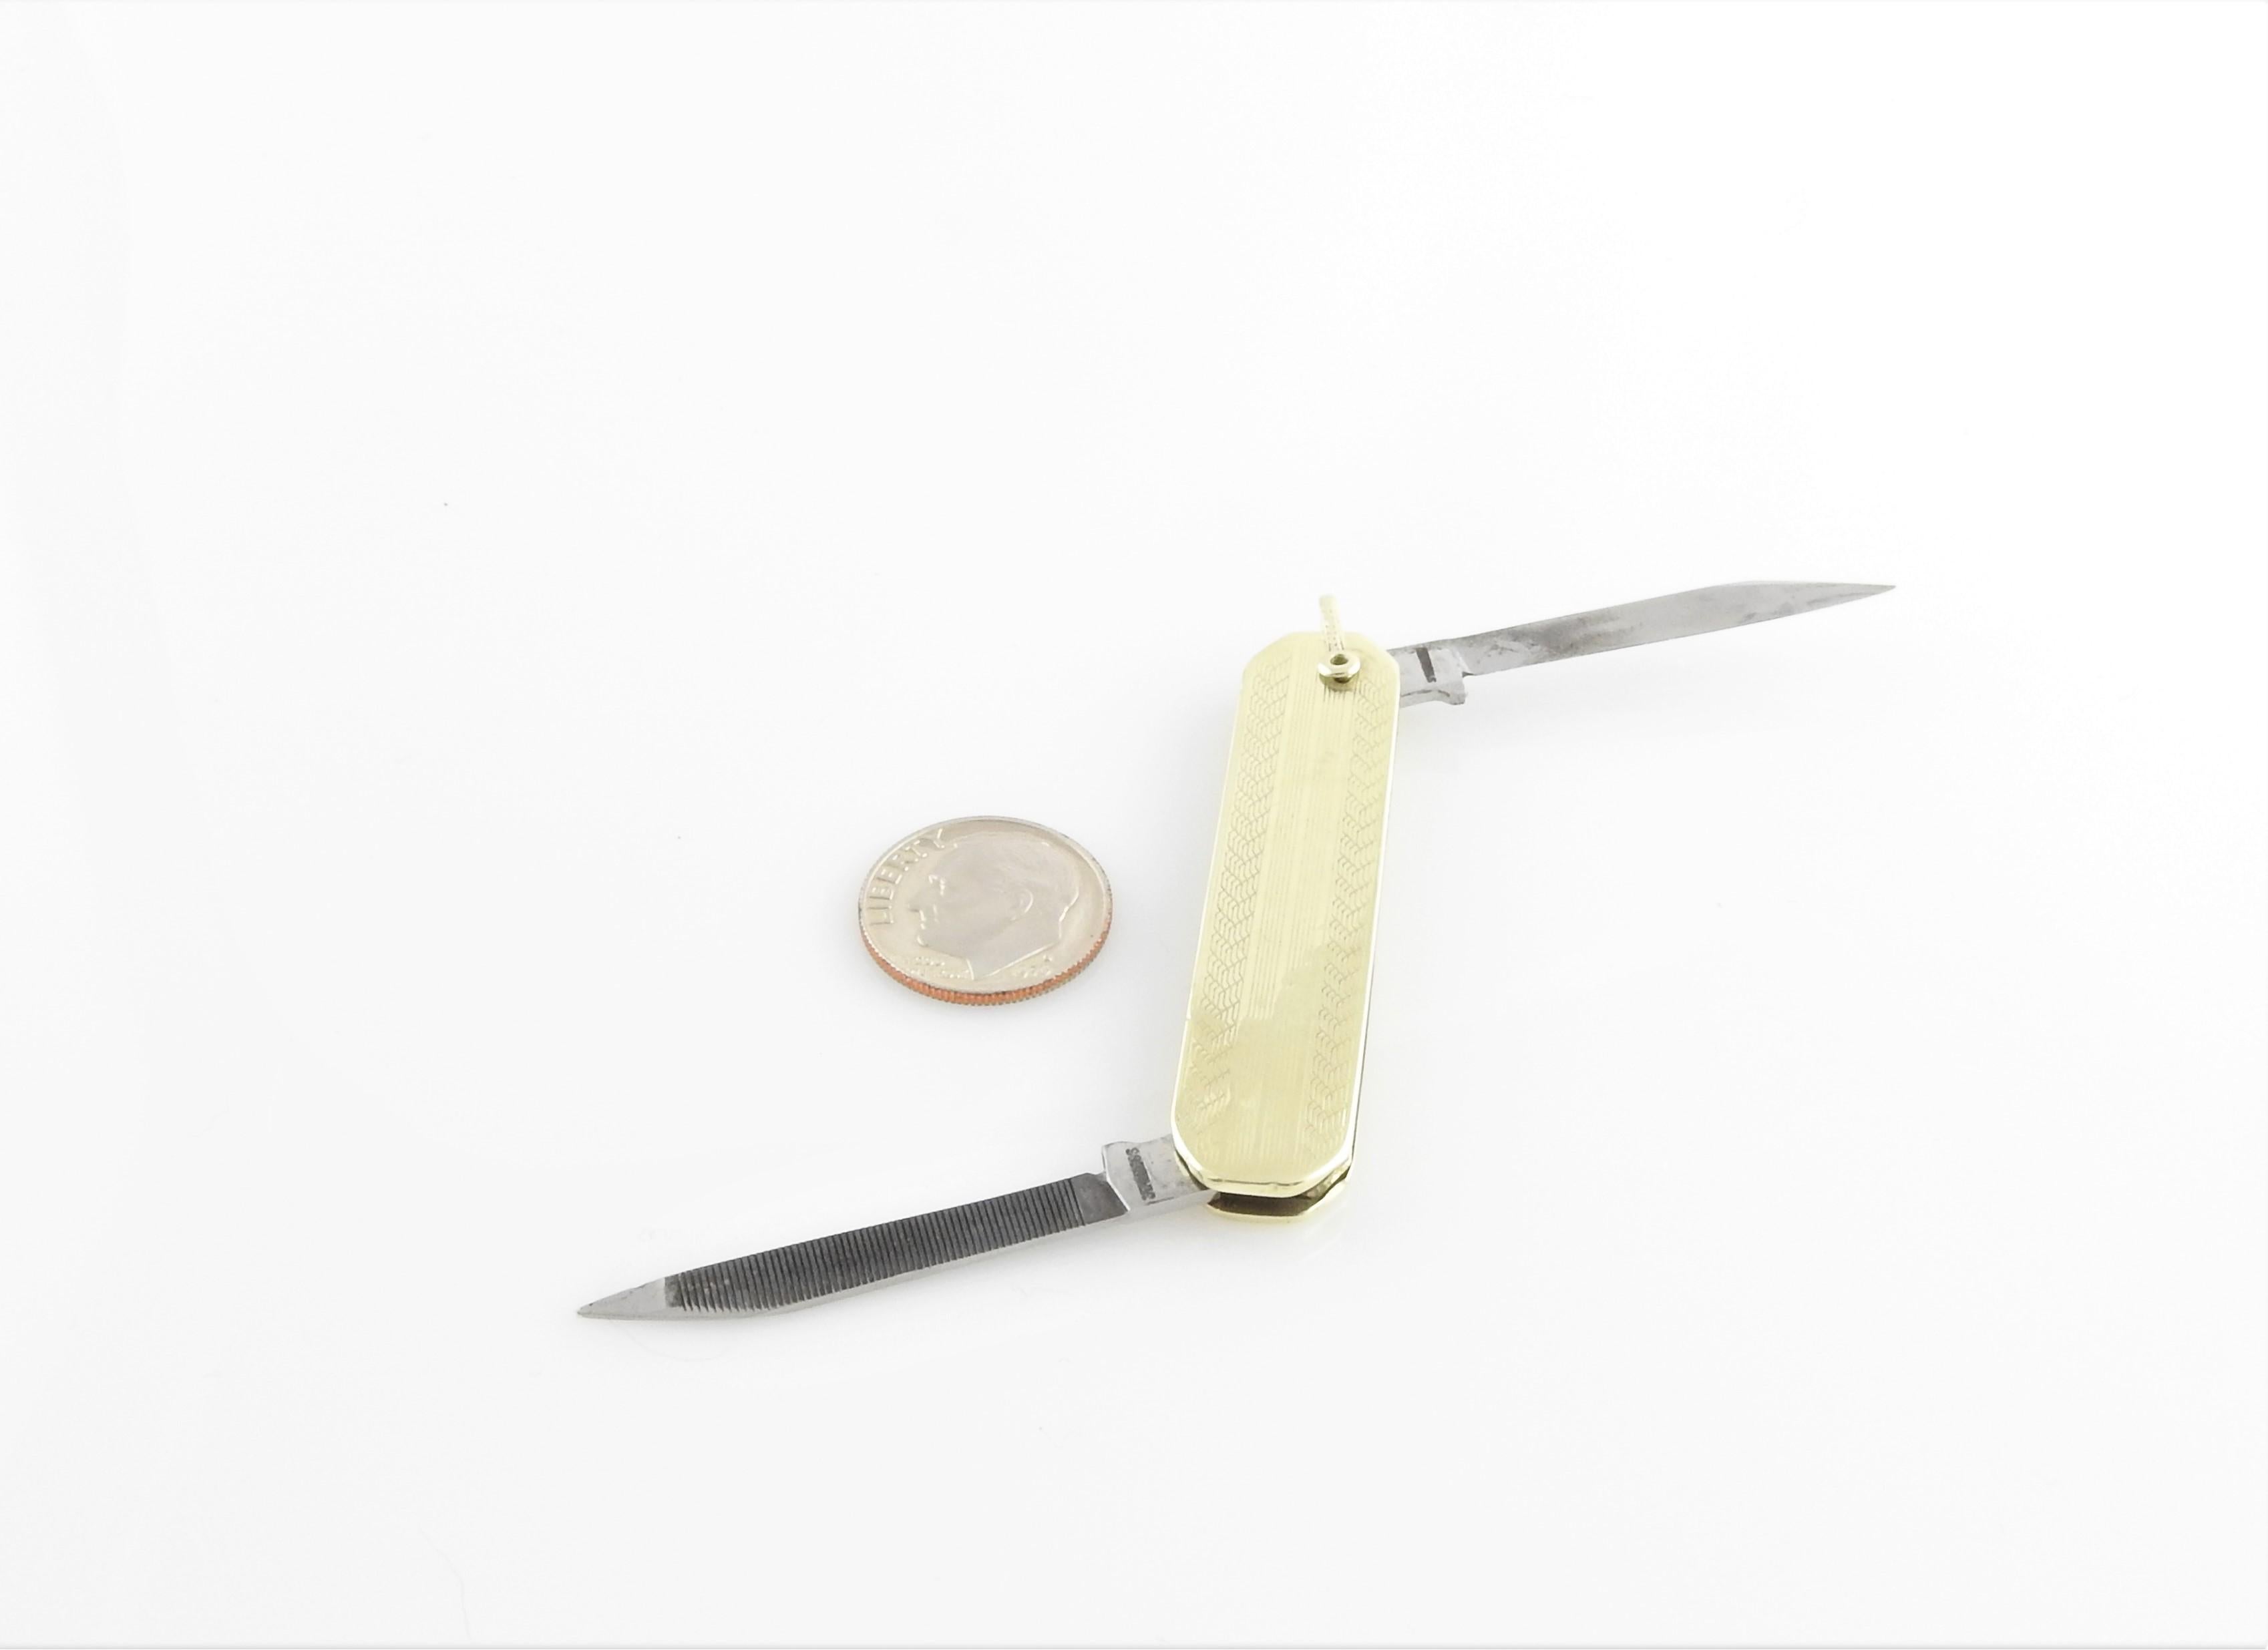 14 Karat Yellow Gold Pocket Knife 4